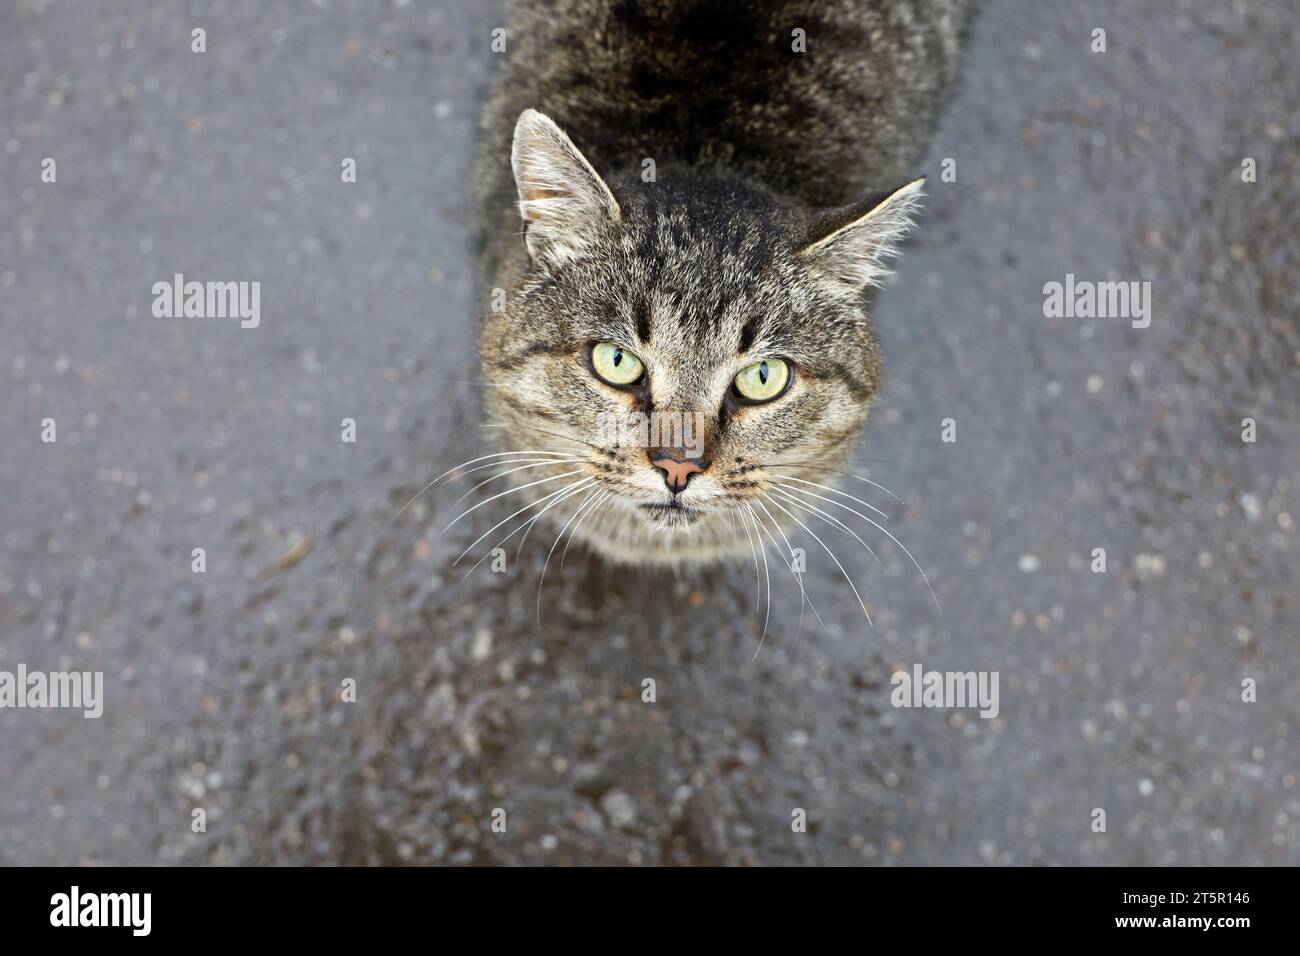 Il ritratto di un gatto Tabby sembra in piedi su una strada bagnata Foto Stock